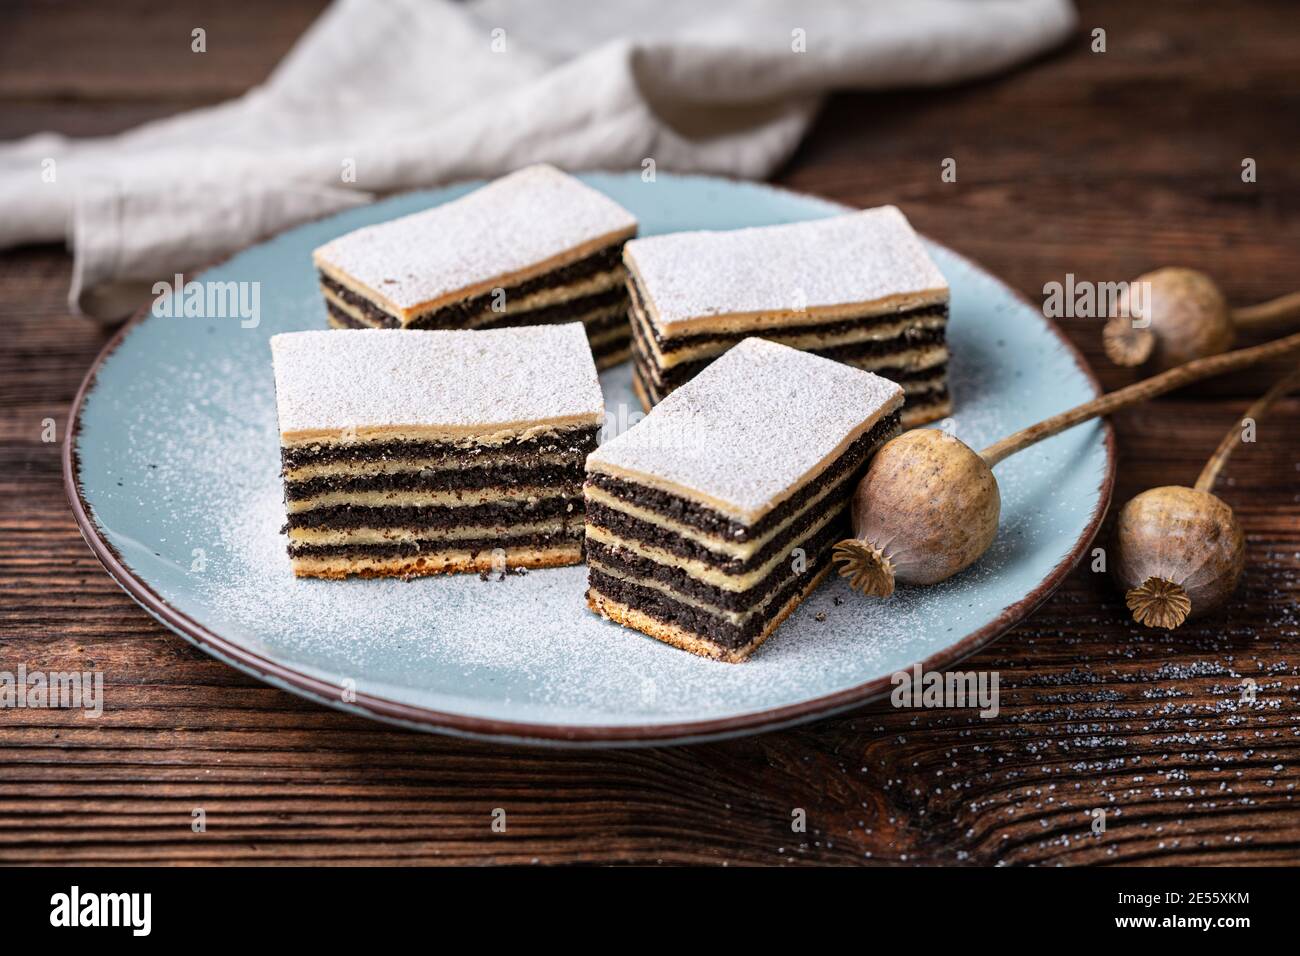 Süßes Dessert, mit Puderzucker bestäubter Mohn-Kuchen Stockfoto